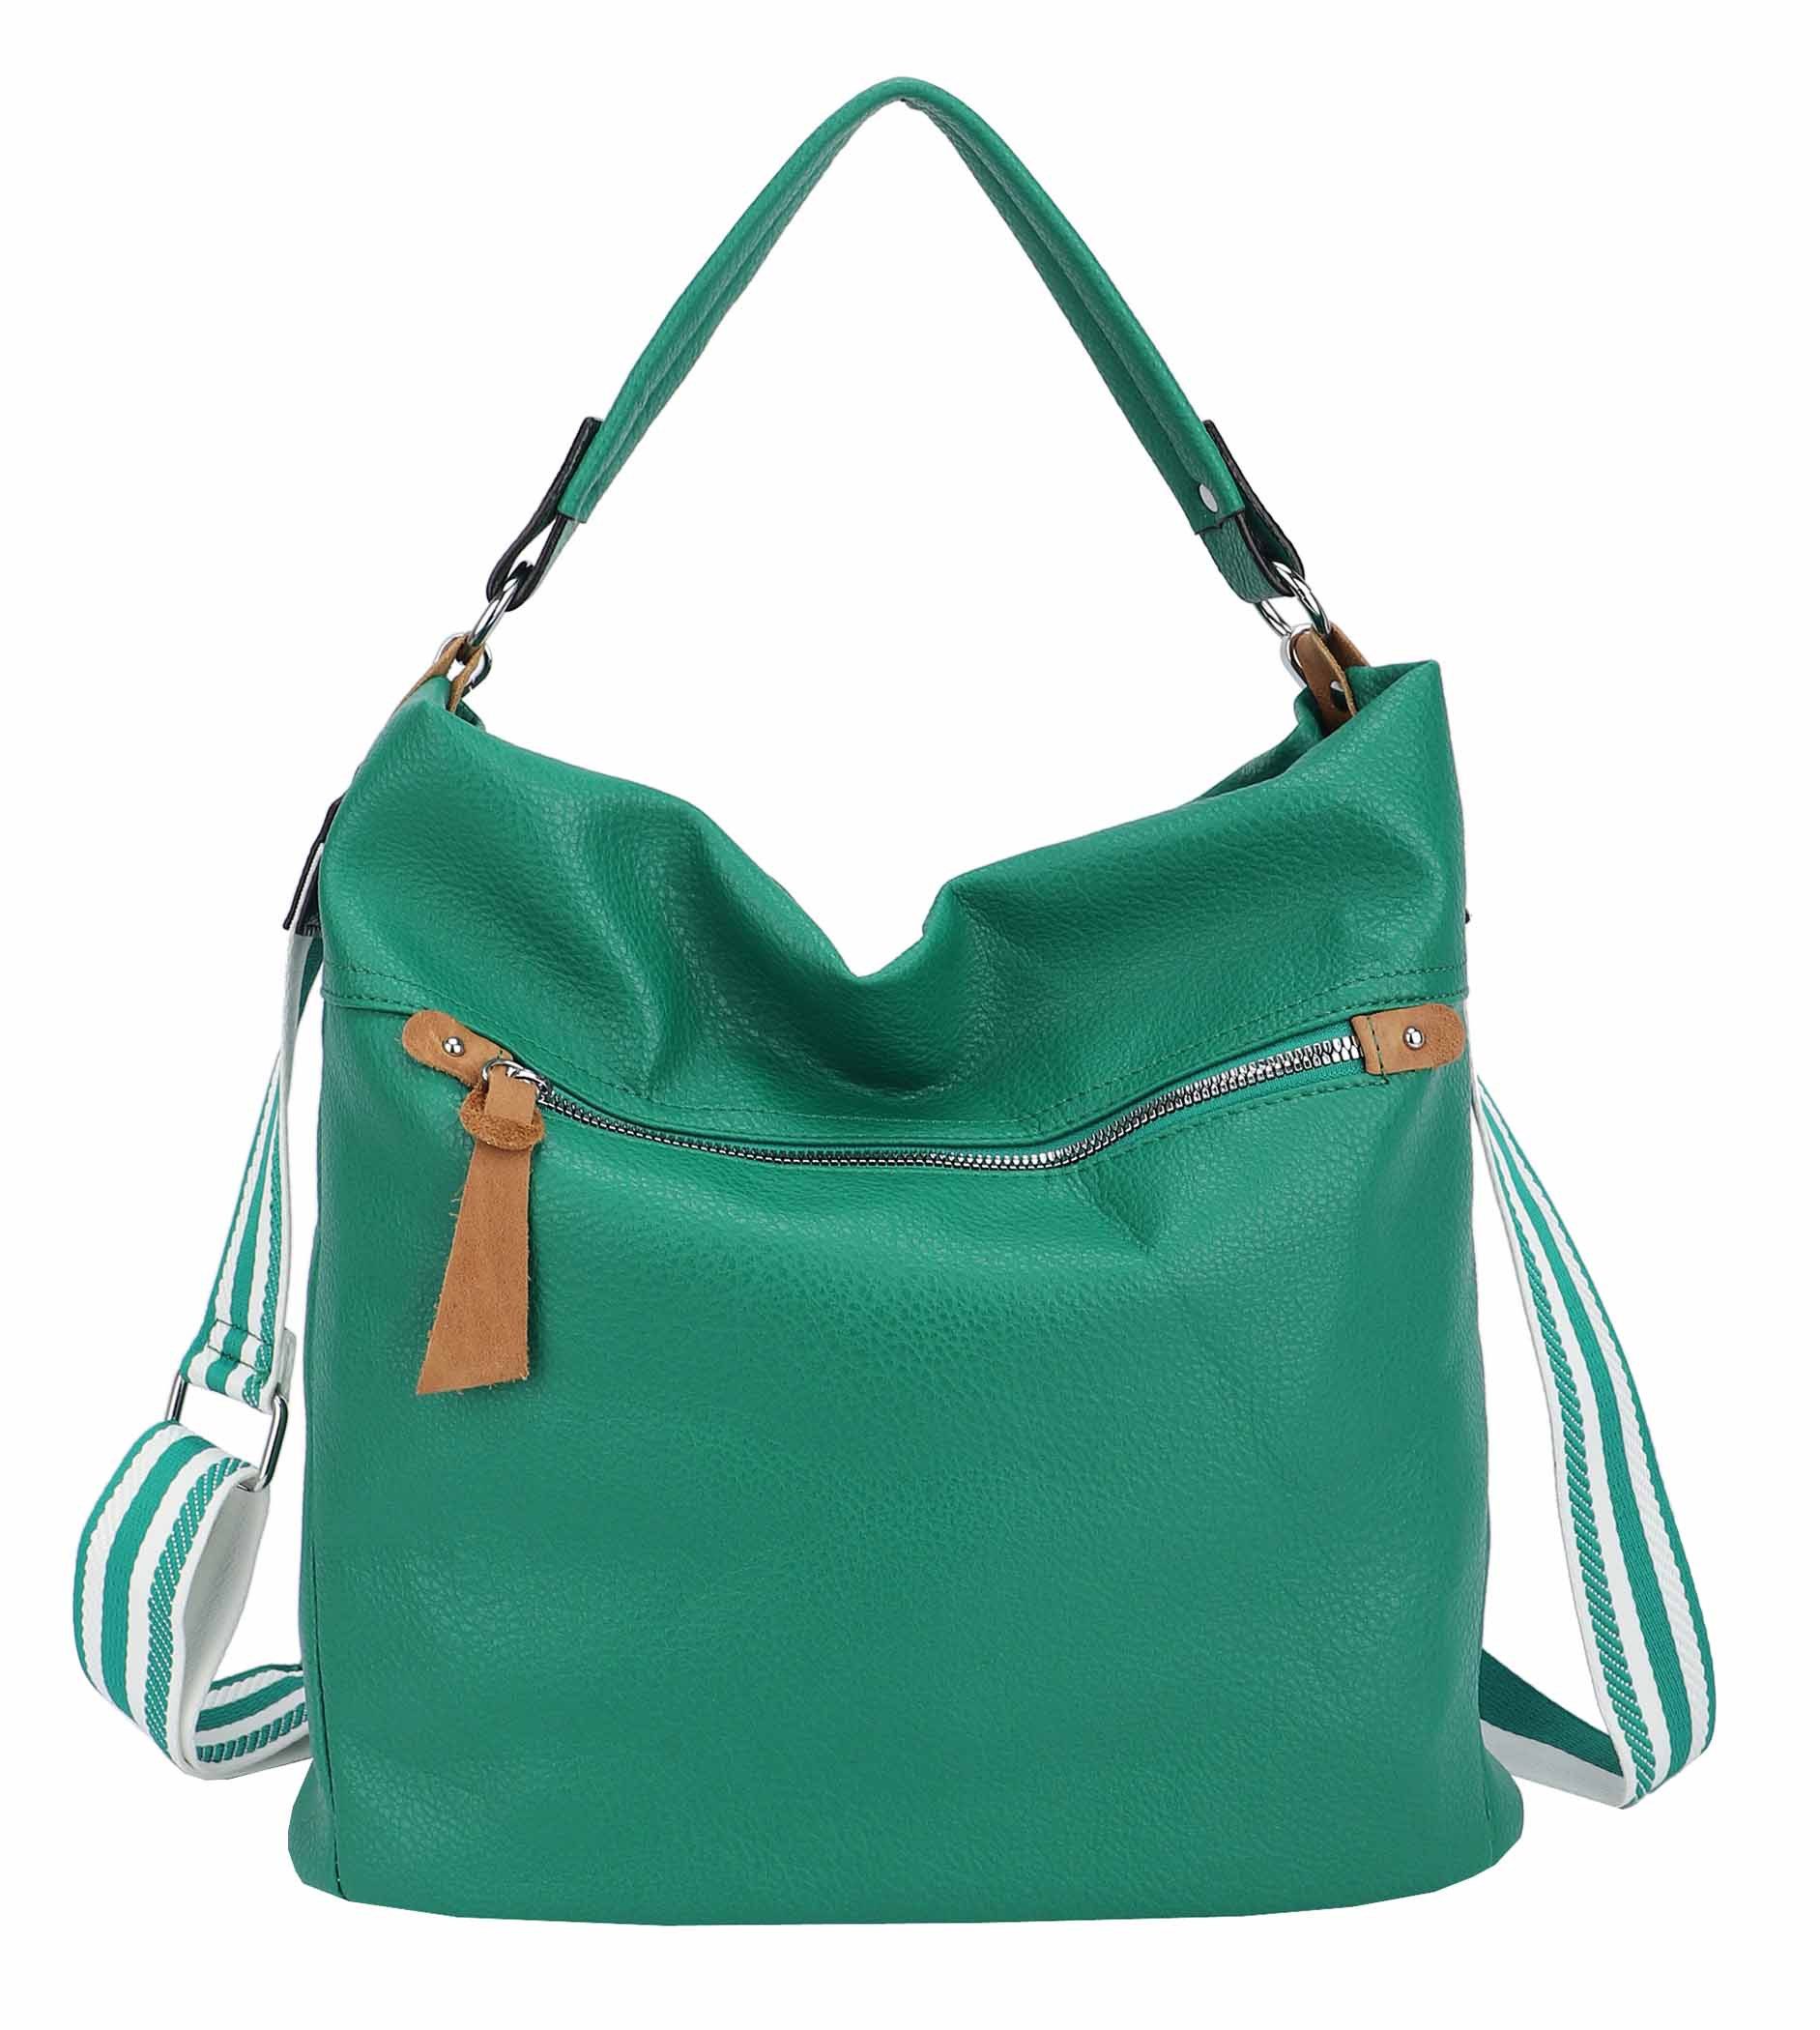 ITALYSHOP24 Schultertasche XL Damen Tasche Shopper Hobo-Bag Schultertasche, ein Leichtgewicht, als Handtasche, Henkeltasche tragbar